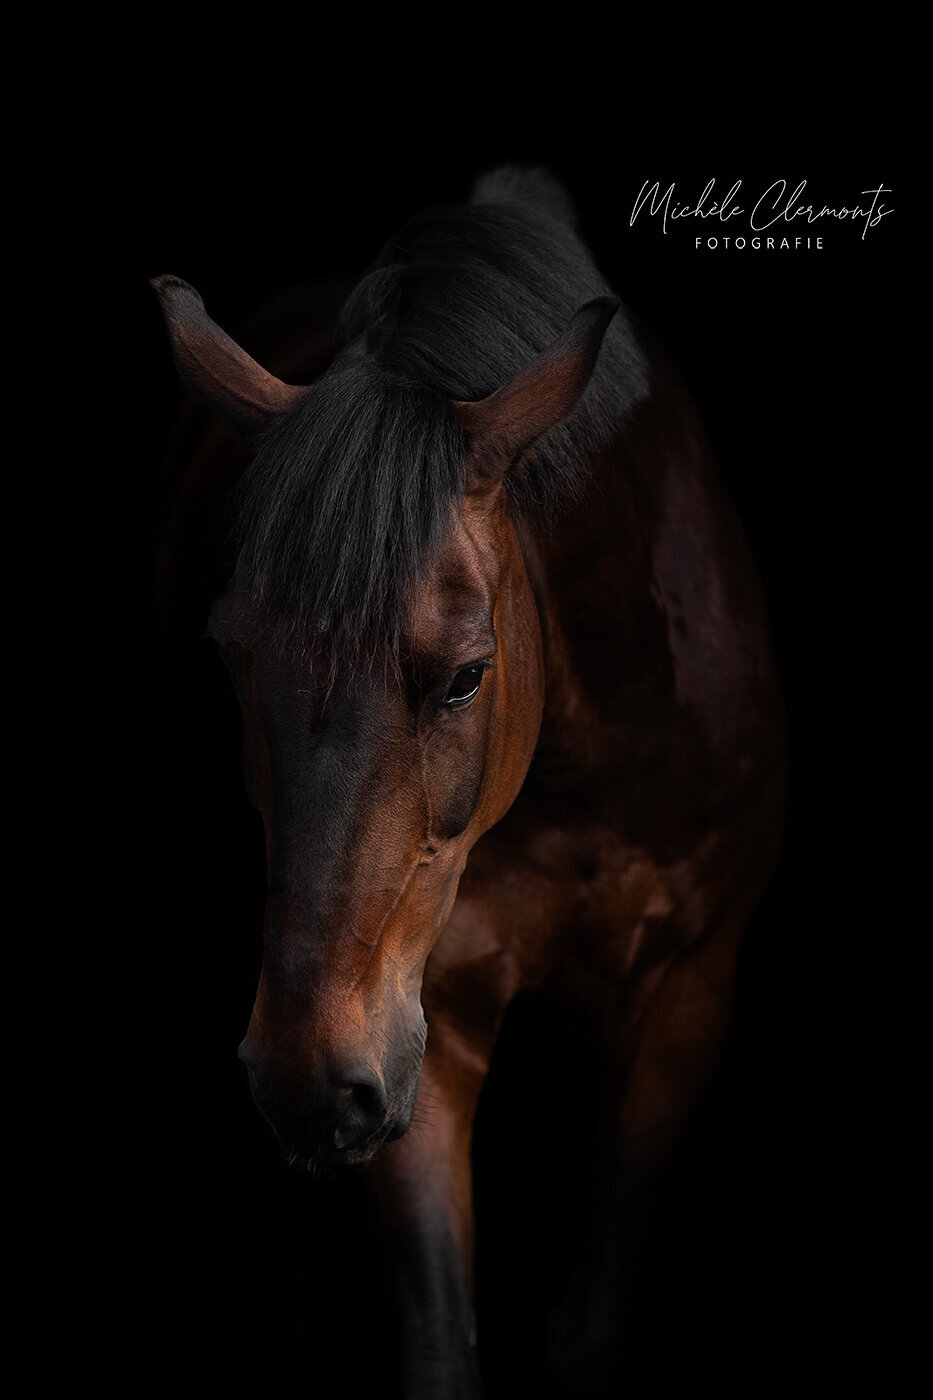 DSC_4566-1-paardenfotografie-michele-clermonts-fotografie-low